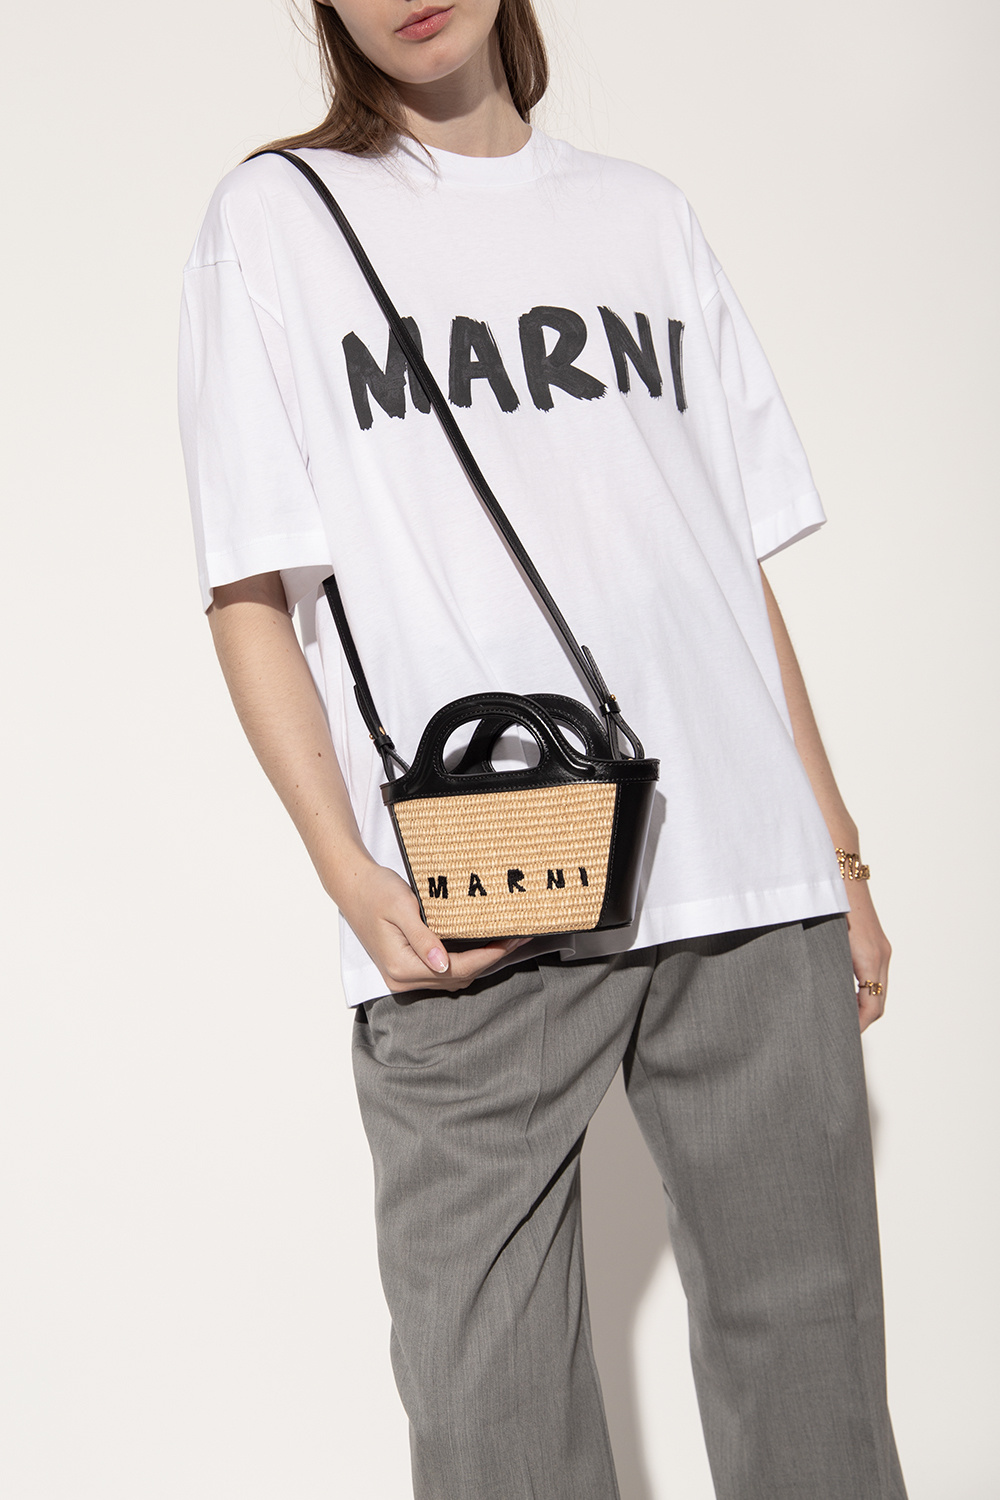 Marni Micro Tropicalia Bag